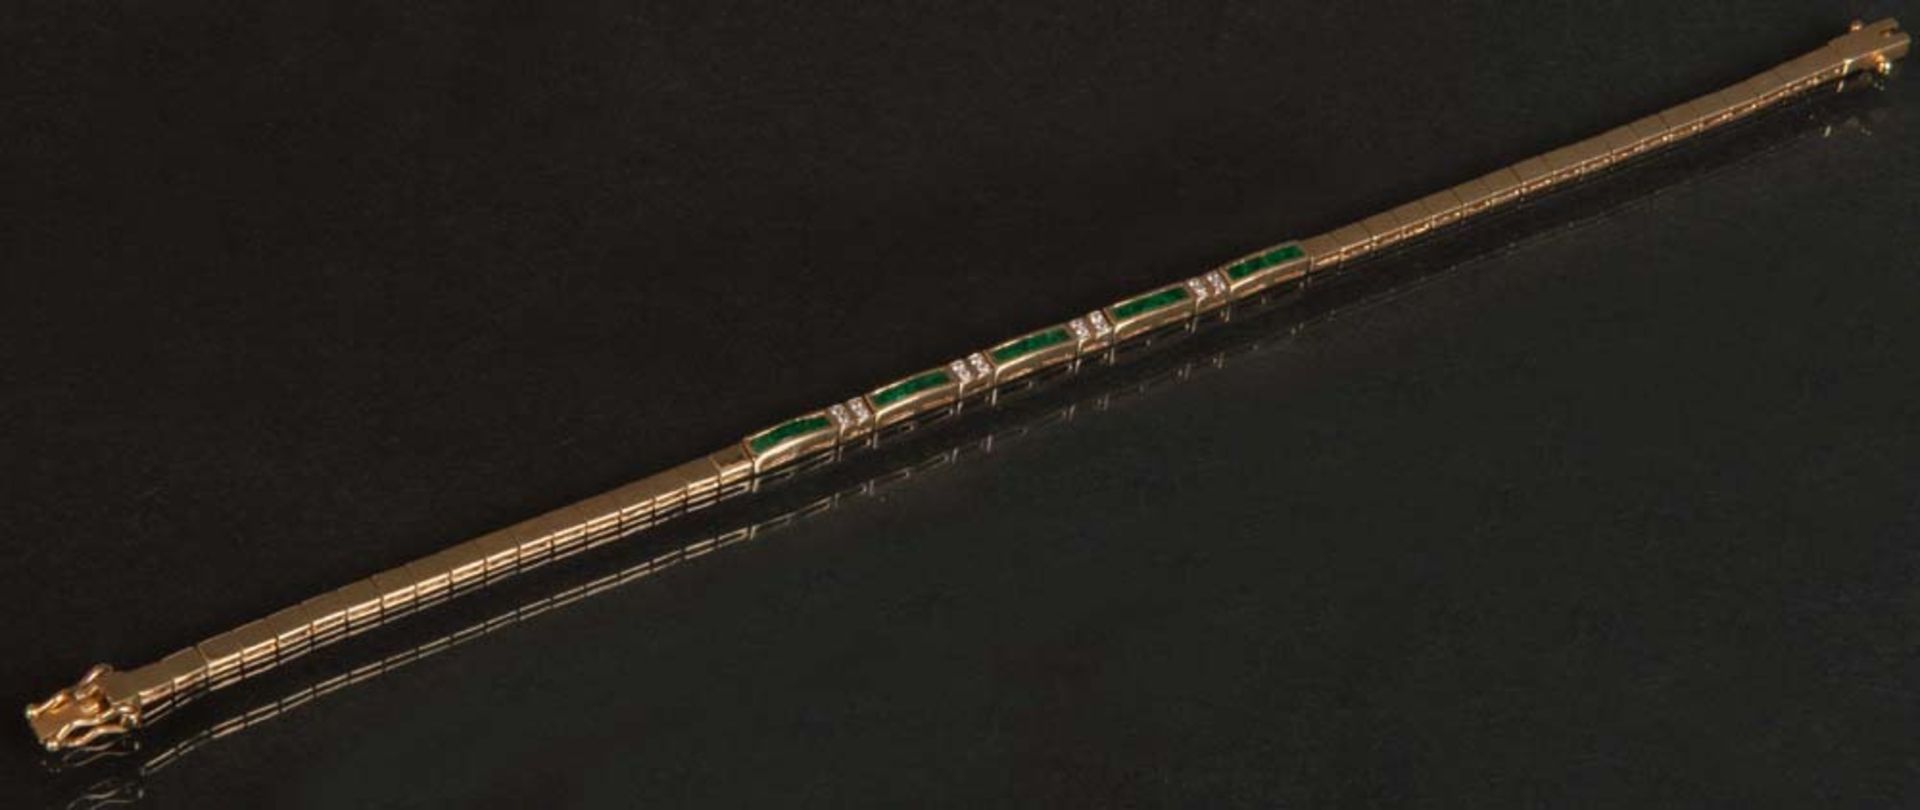 Armband. 14 ct Gelbgold, ca. 7 g, besetzt mit Brillanten, ca. 0,08 ct, L=18 cm.